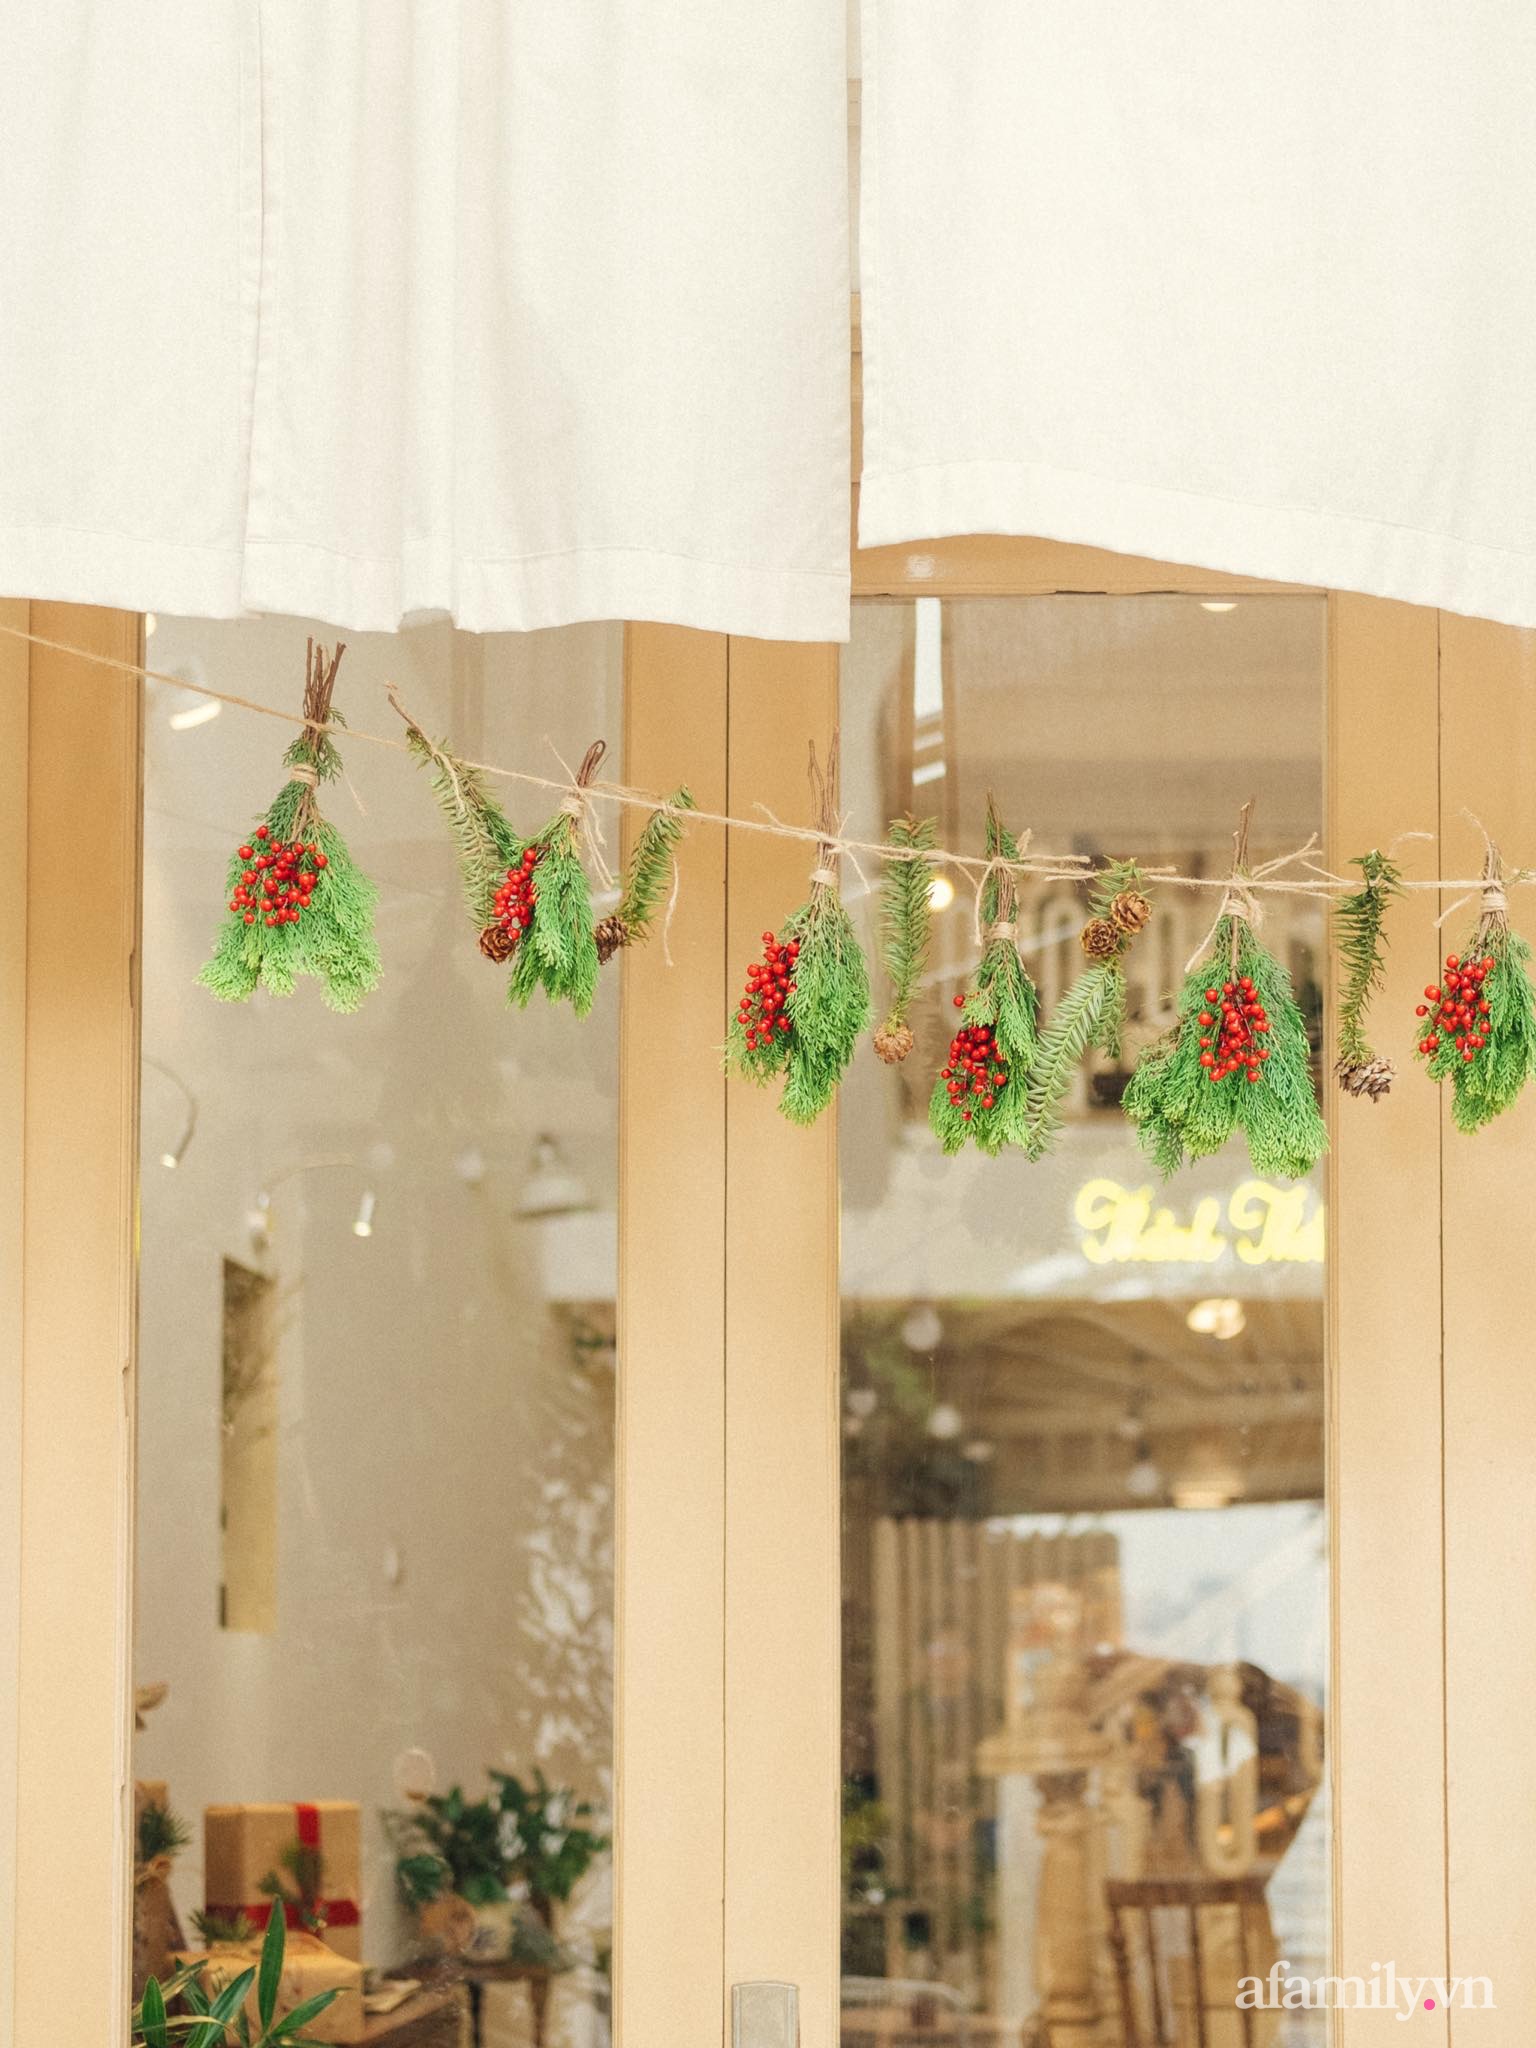 Căn nhà phố Hà Nội dịu dàng hương Giáng sinh nhờ decor bằng nguyên liệu sẵn có trong bếp - Ảnh 10.